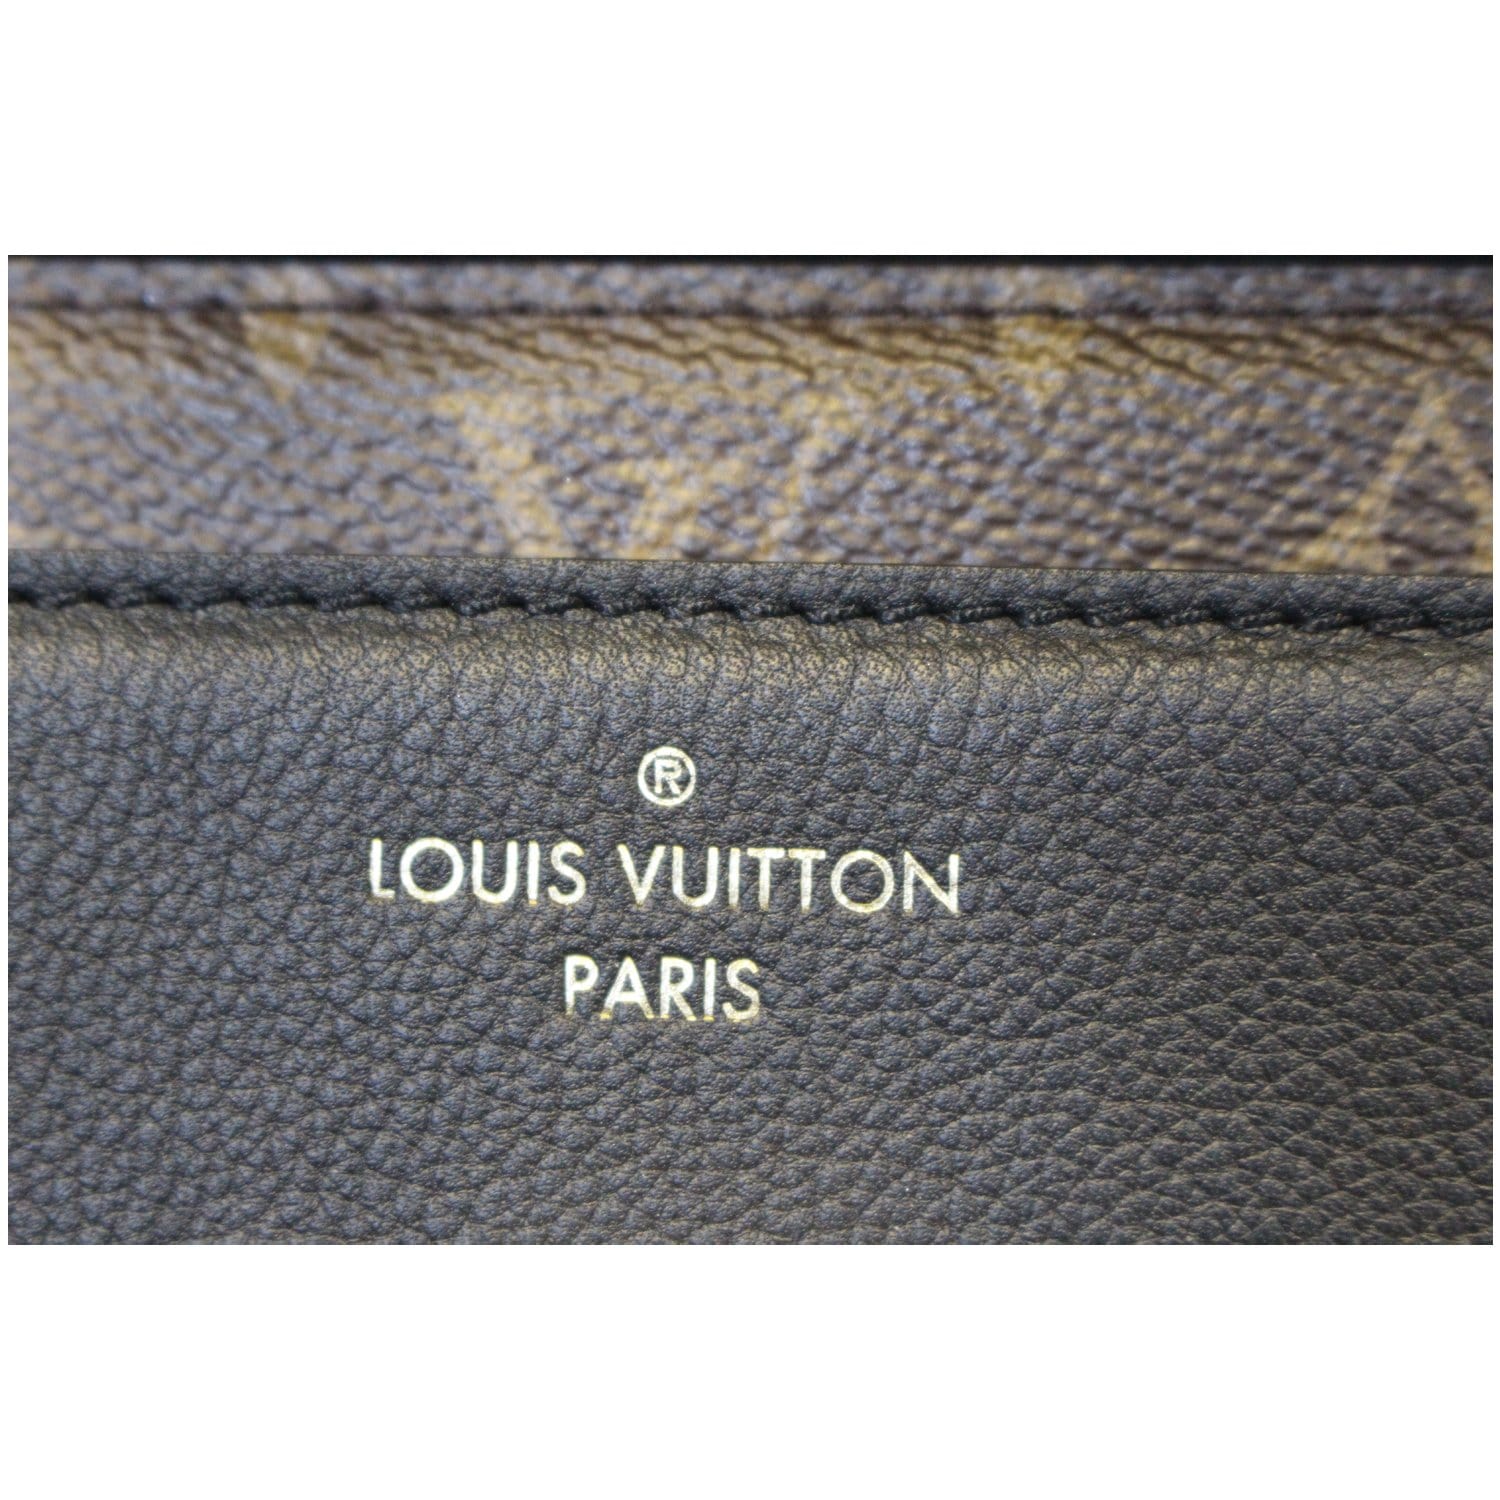 Louis Vuitton Victoire Monogram Noir Bag